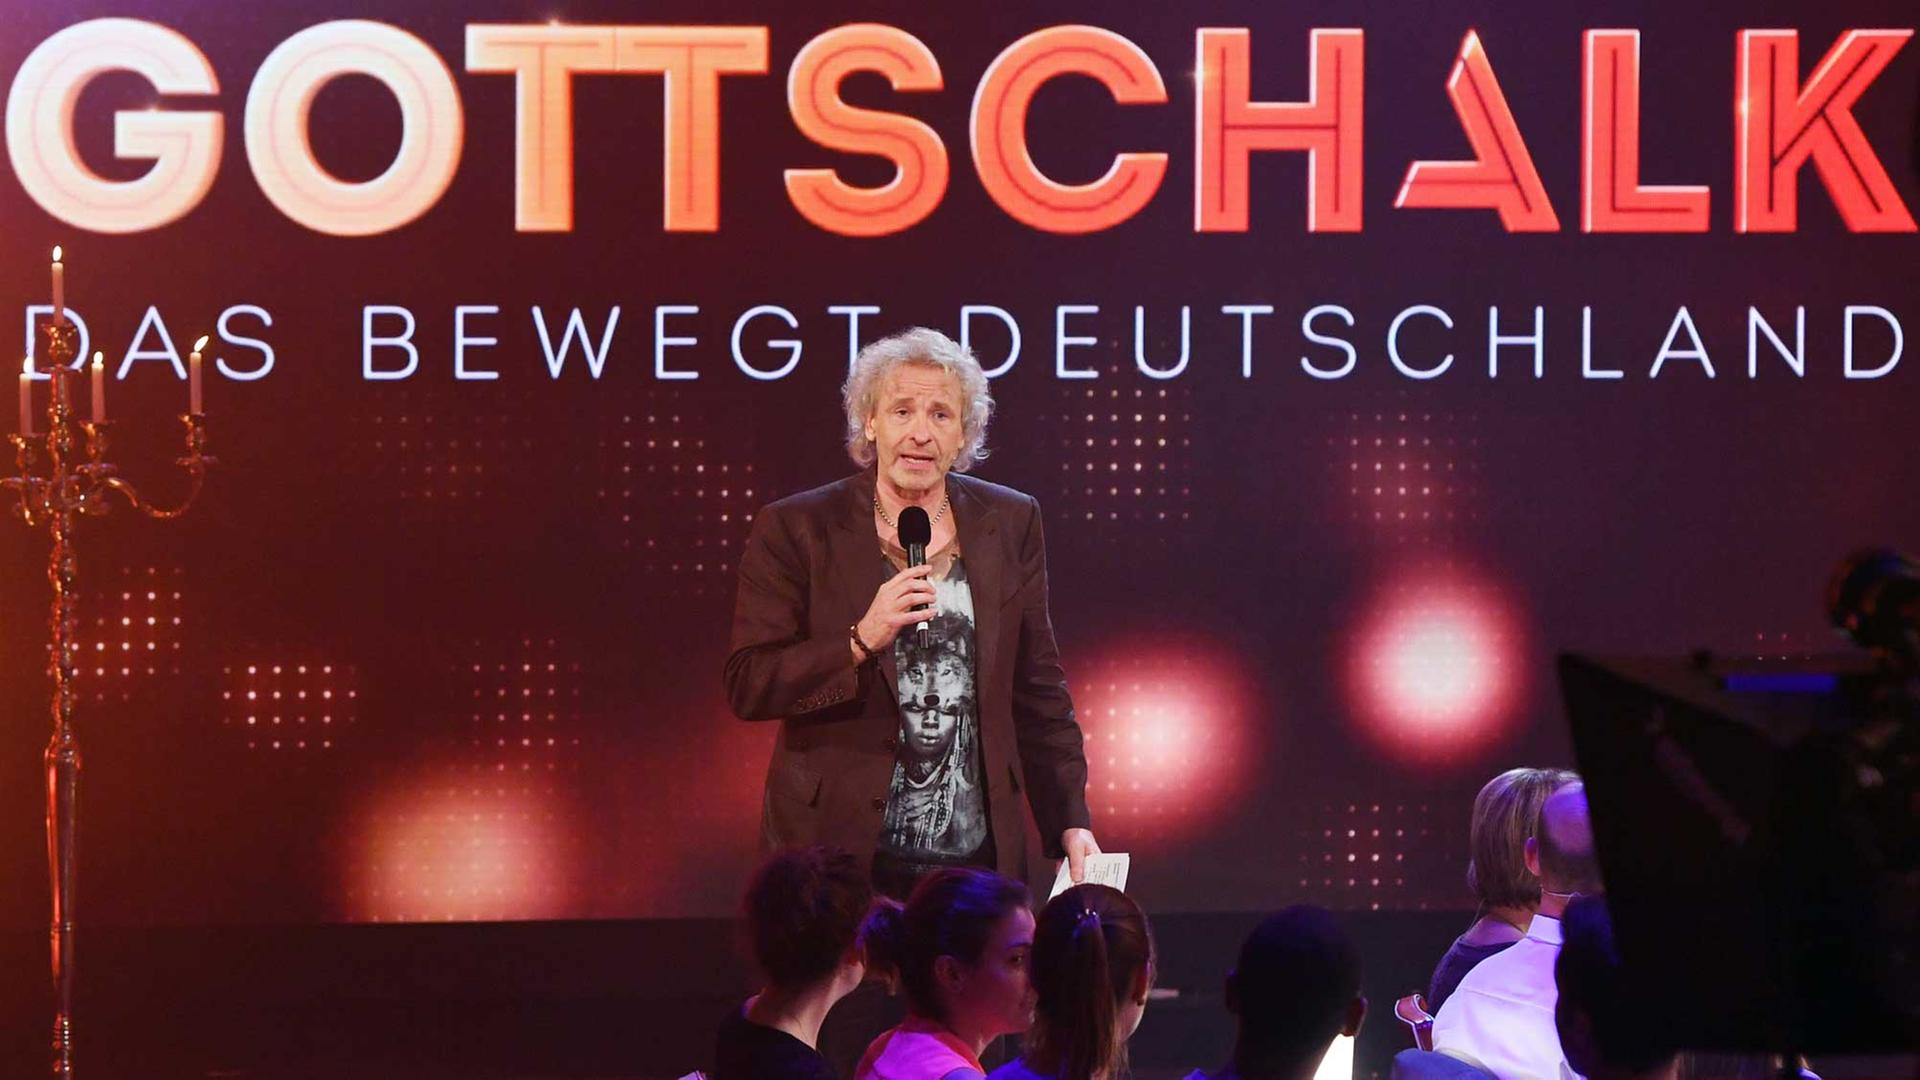 Thomas Gottschalk moderierend auf der Bühne seiner neuen Sonntagabend-Show "Das bewegt Deutschland"